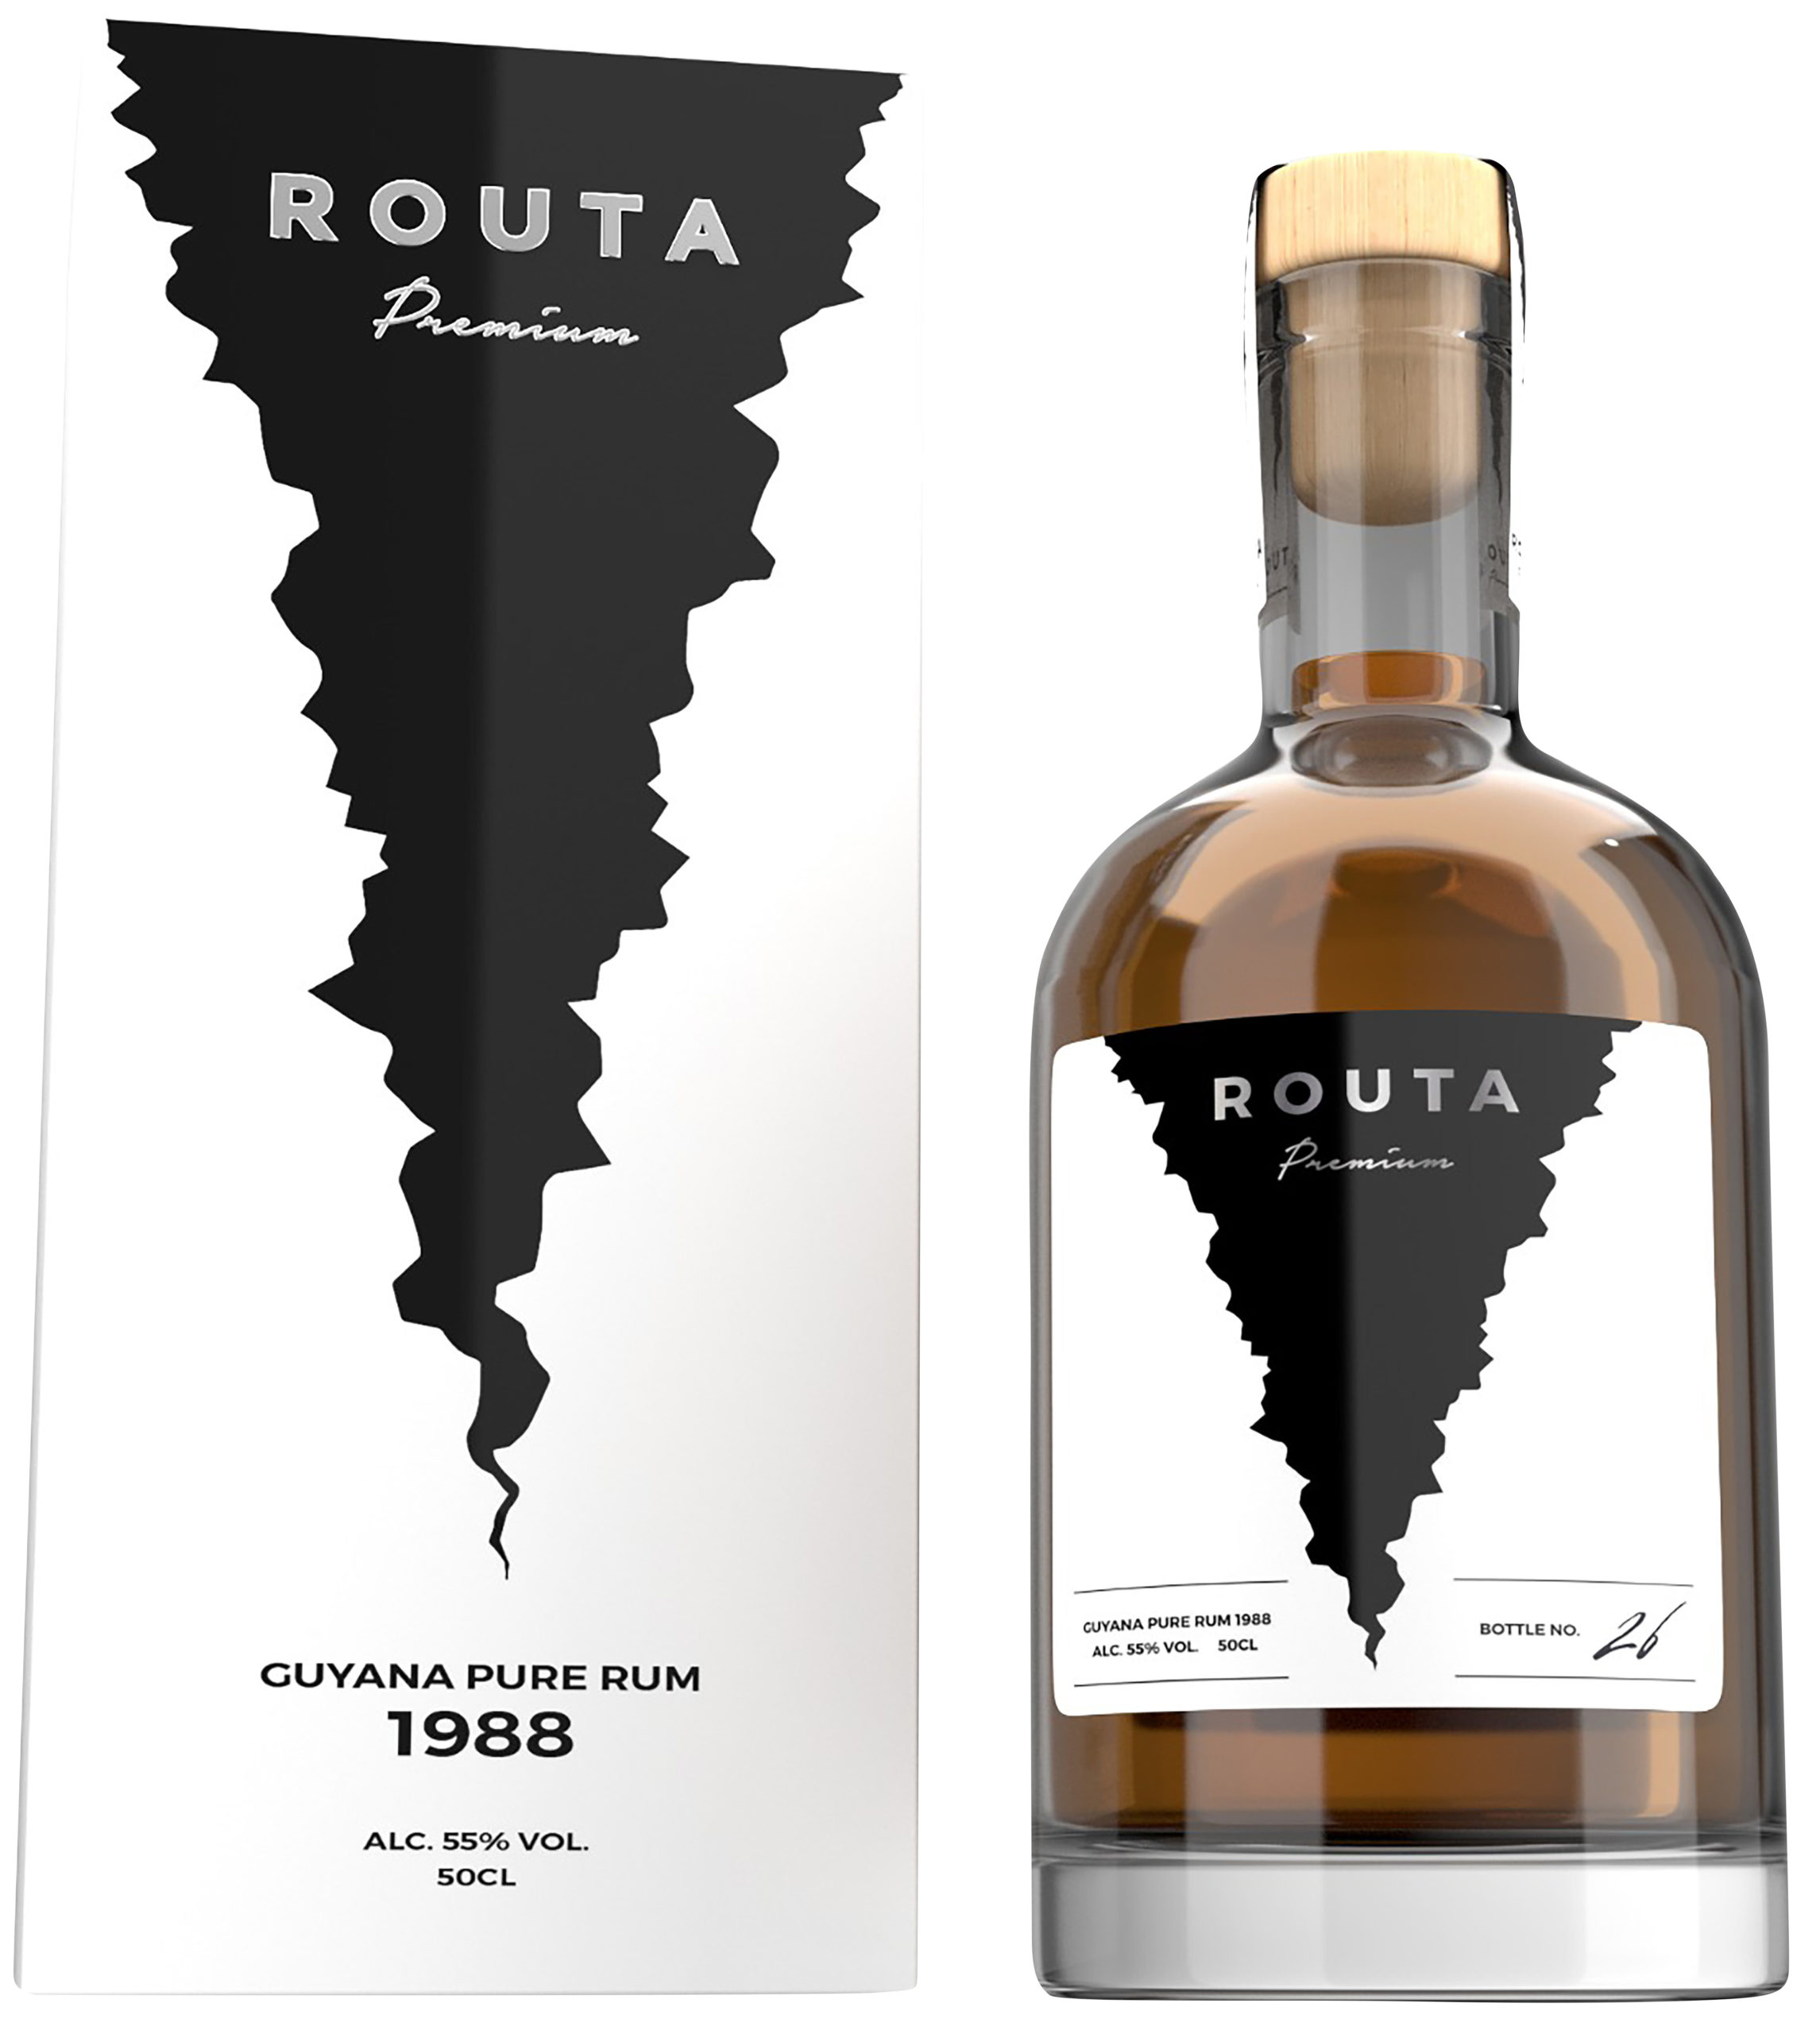 Routa Premium 1988